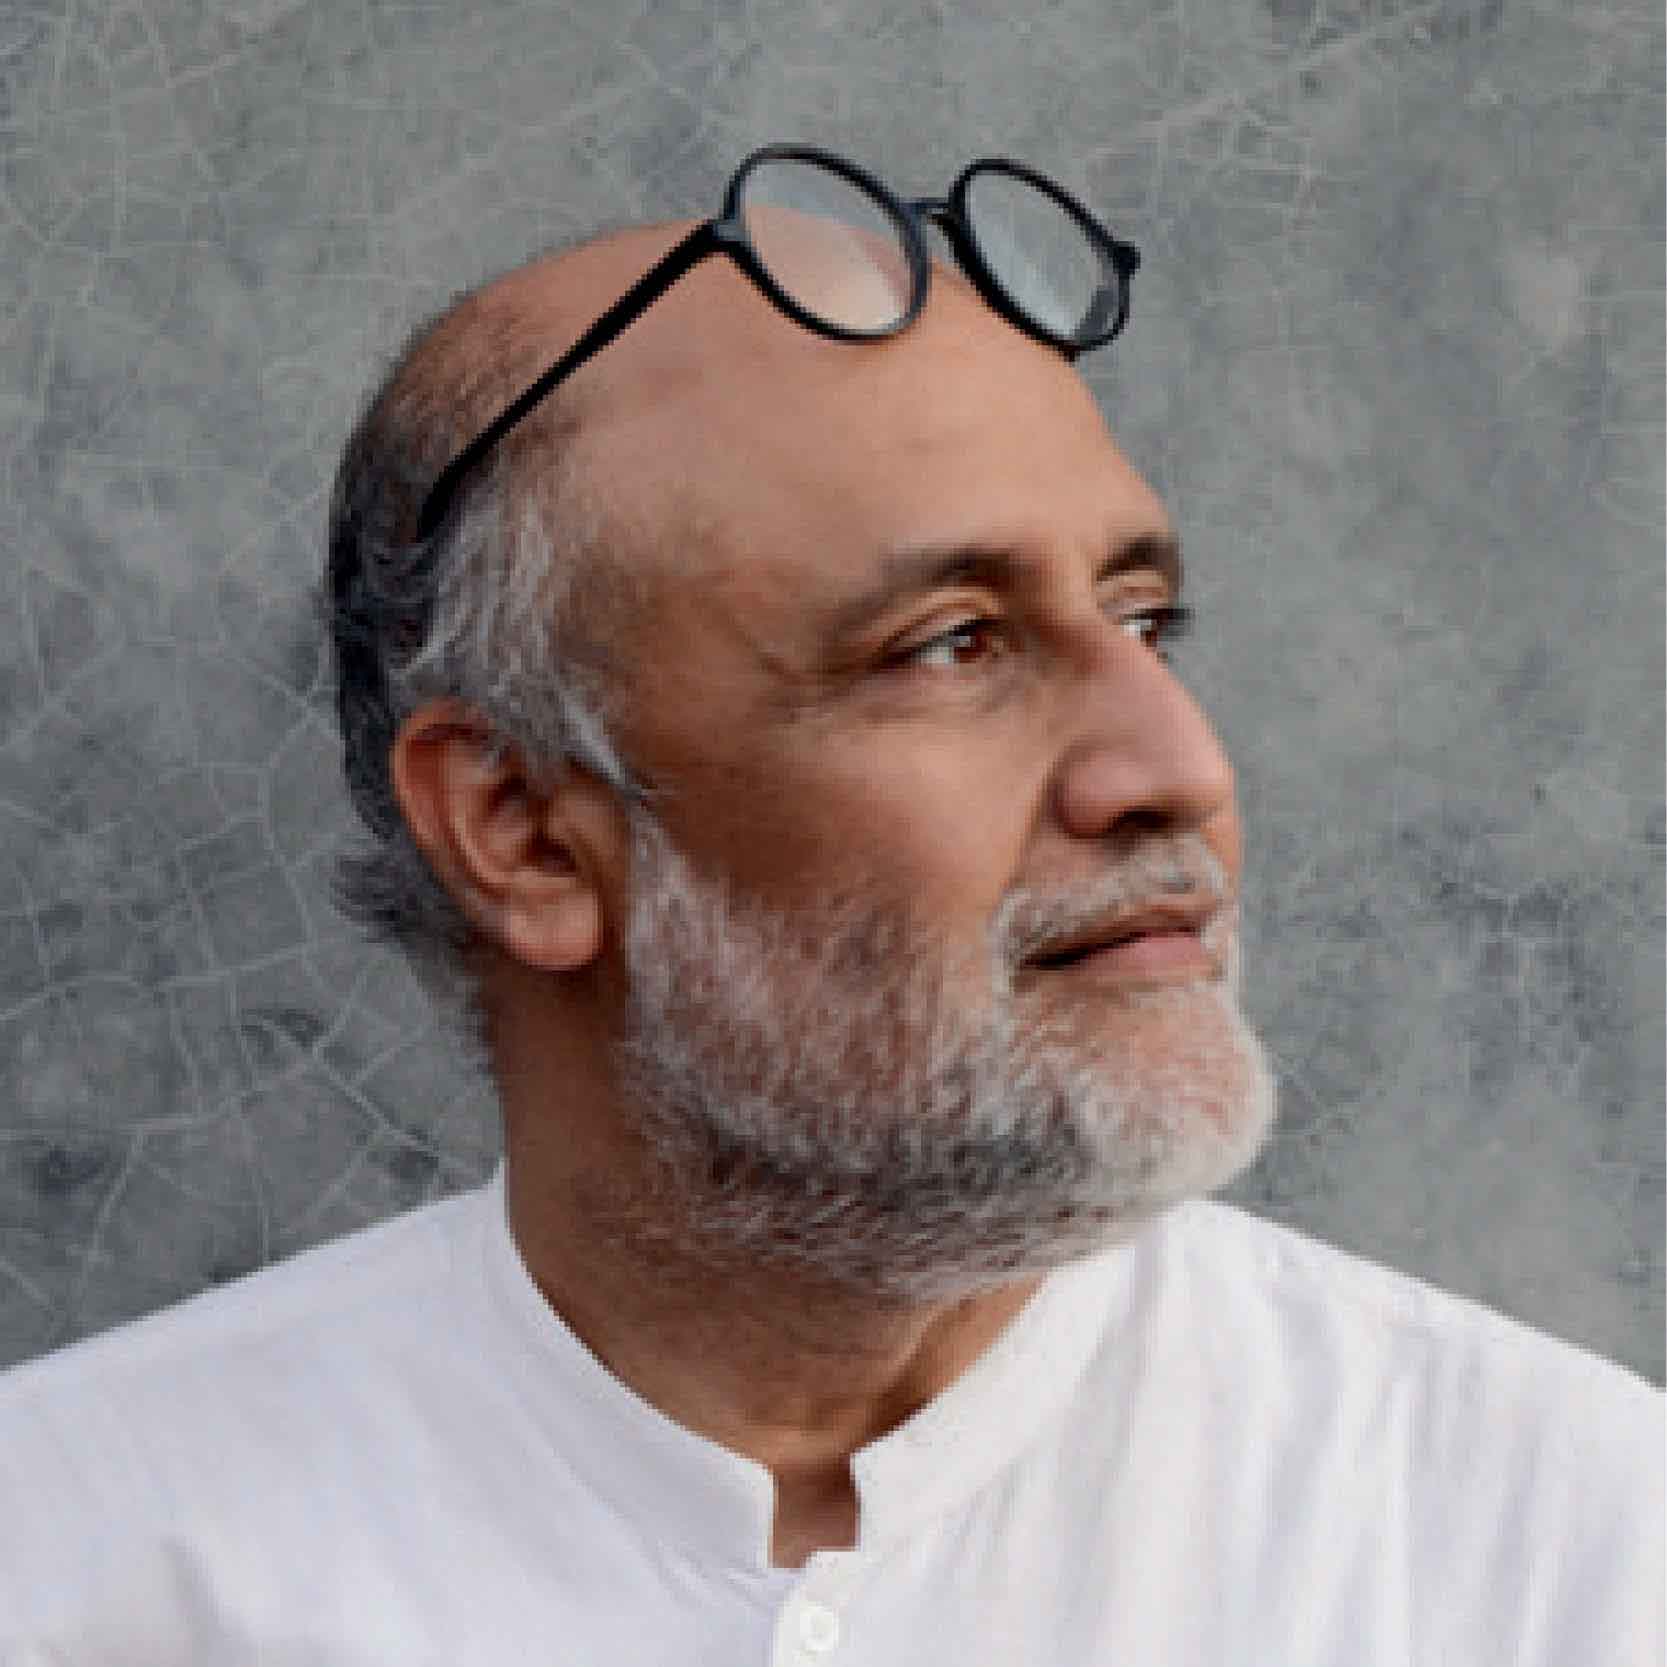 Author Rahul Mehrotra